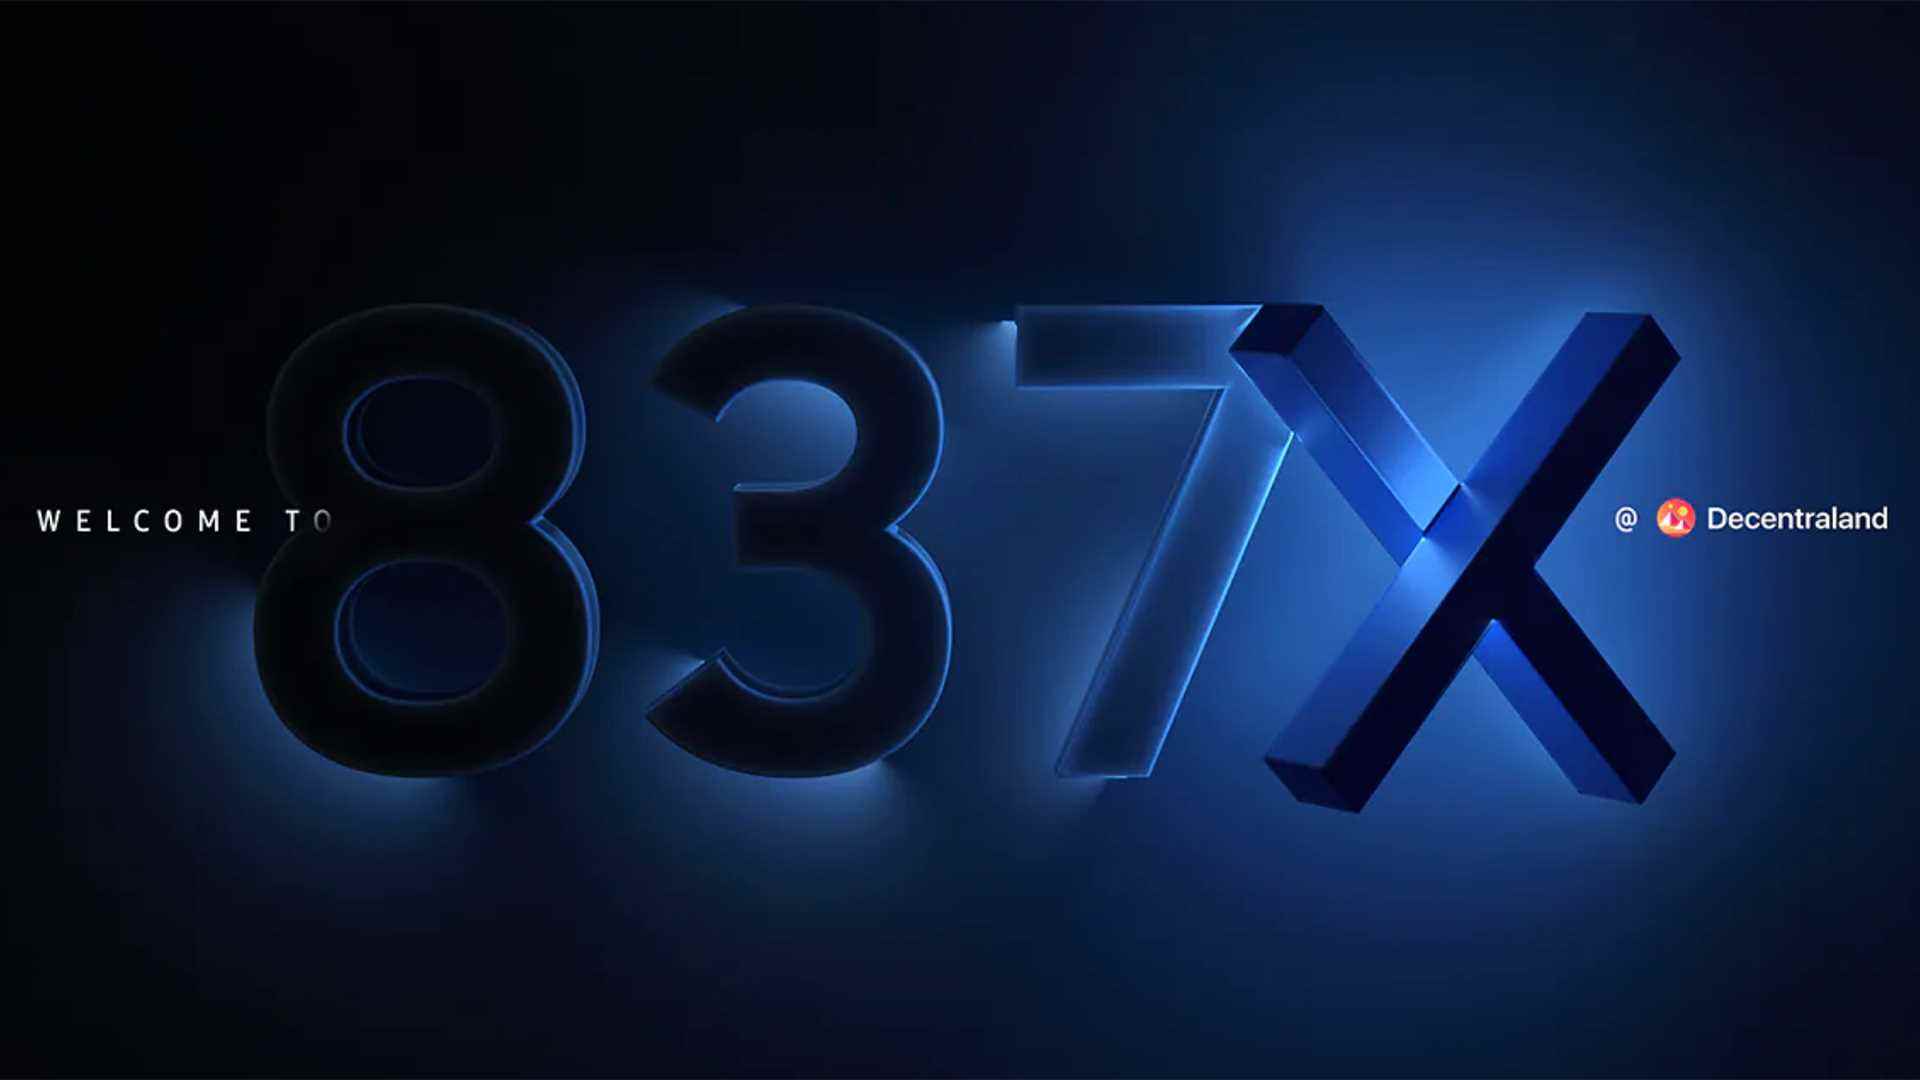 Samsung Galaxy Unpacked'in meta veri tabanındaki lansman etkinliği için 837X logosu